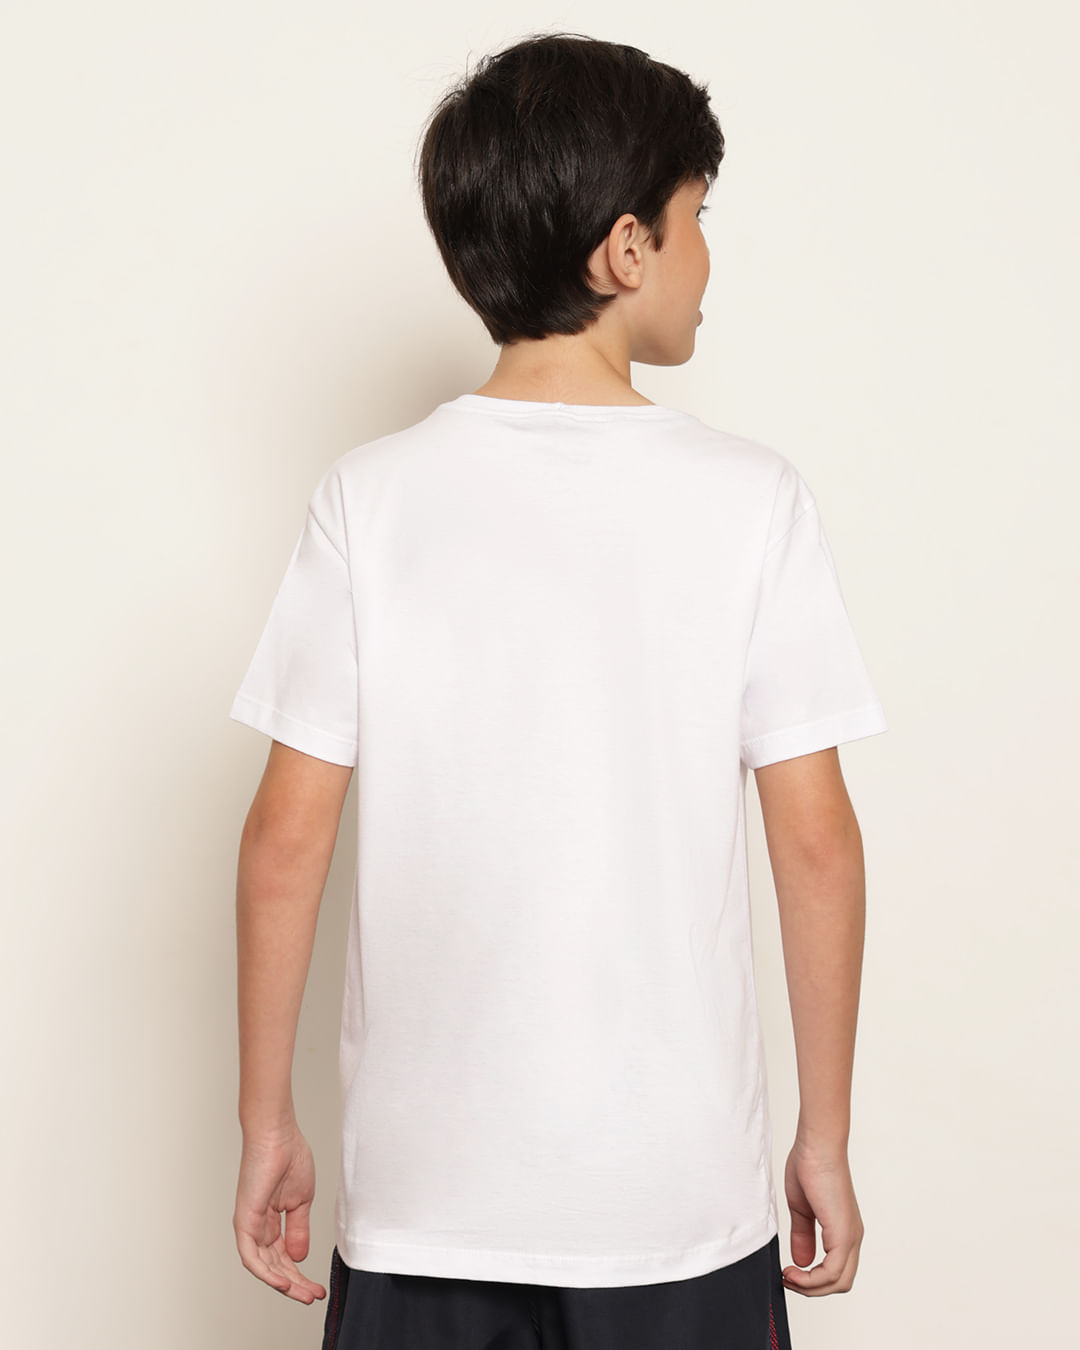 Camiseta-3h126-Mc-M-1016-Sport---Branco